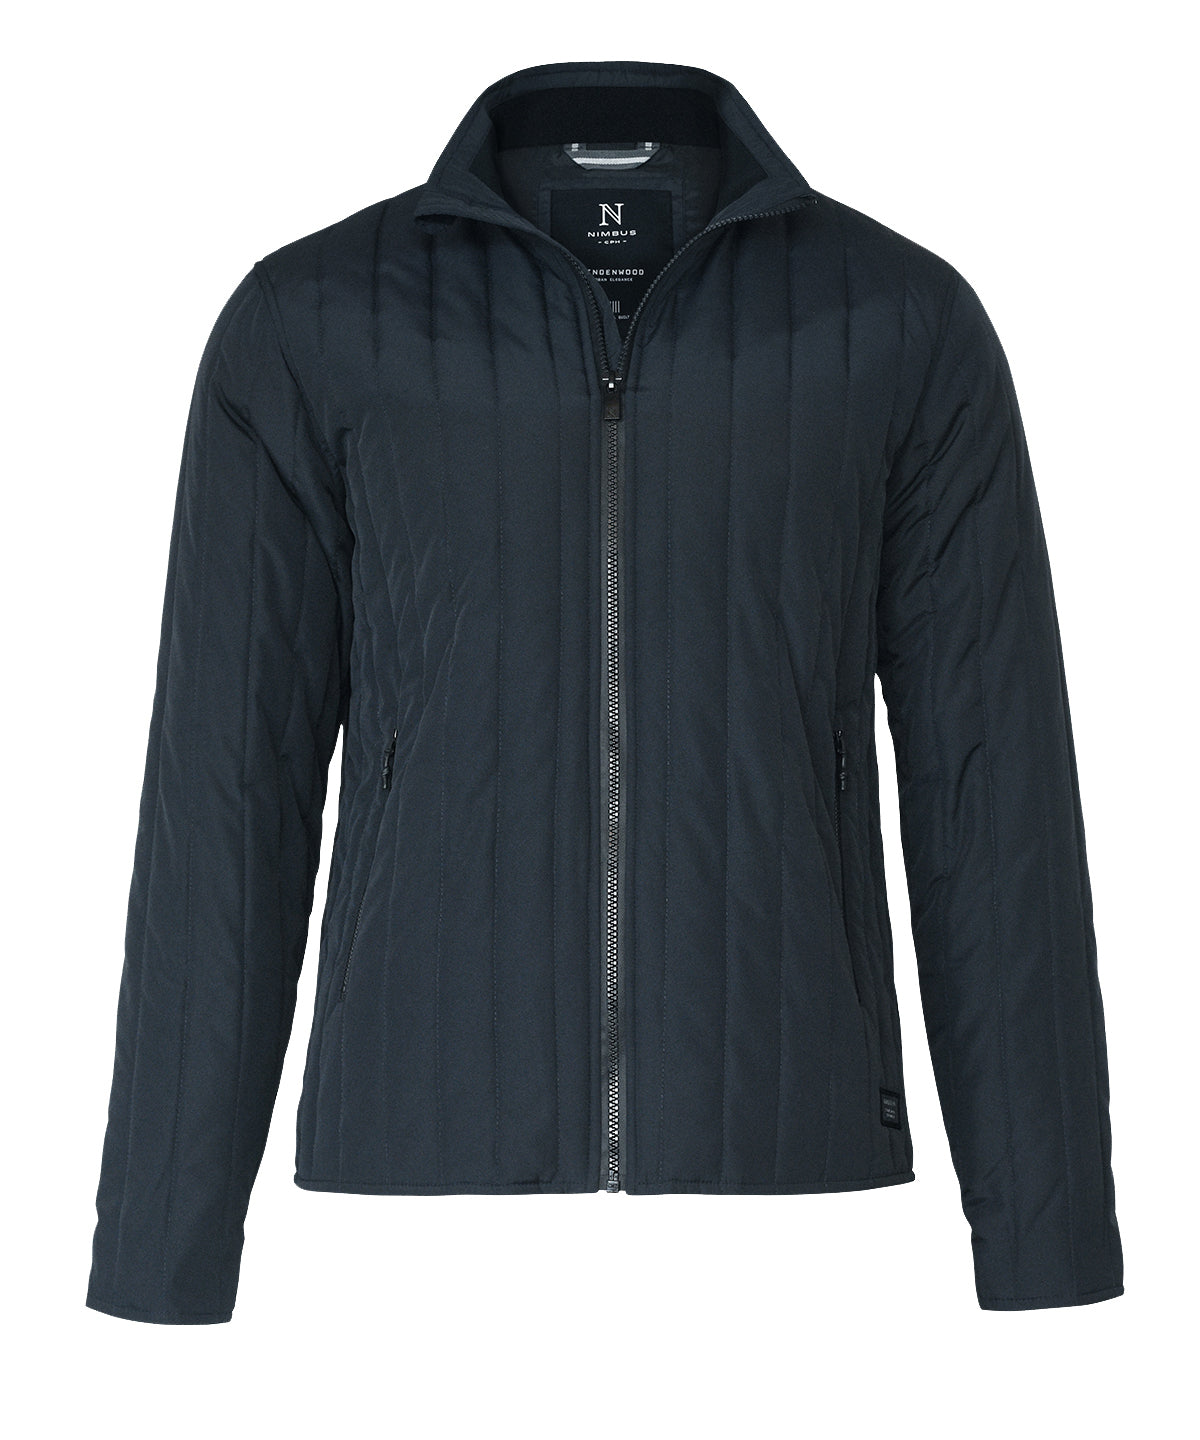 Jakkar - Lindenwood – Urban Style Quilted Jacket